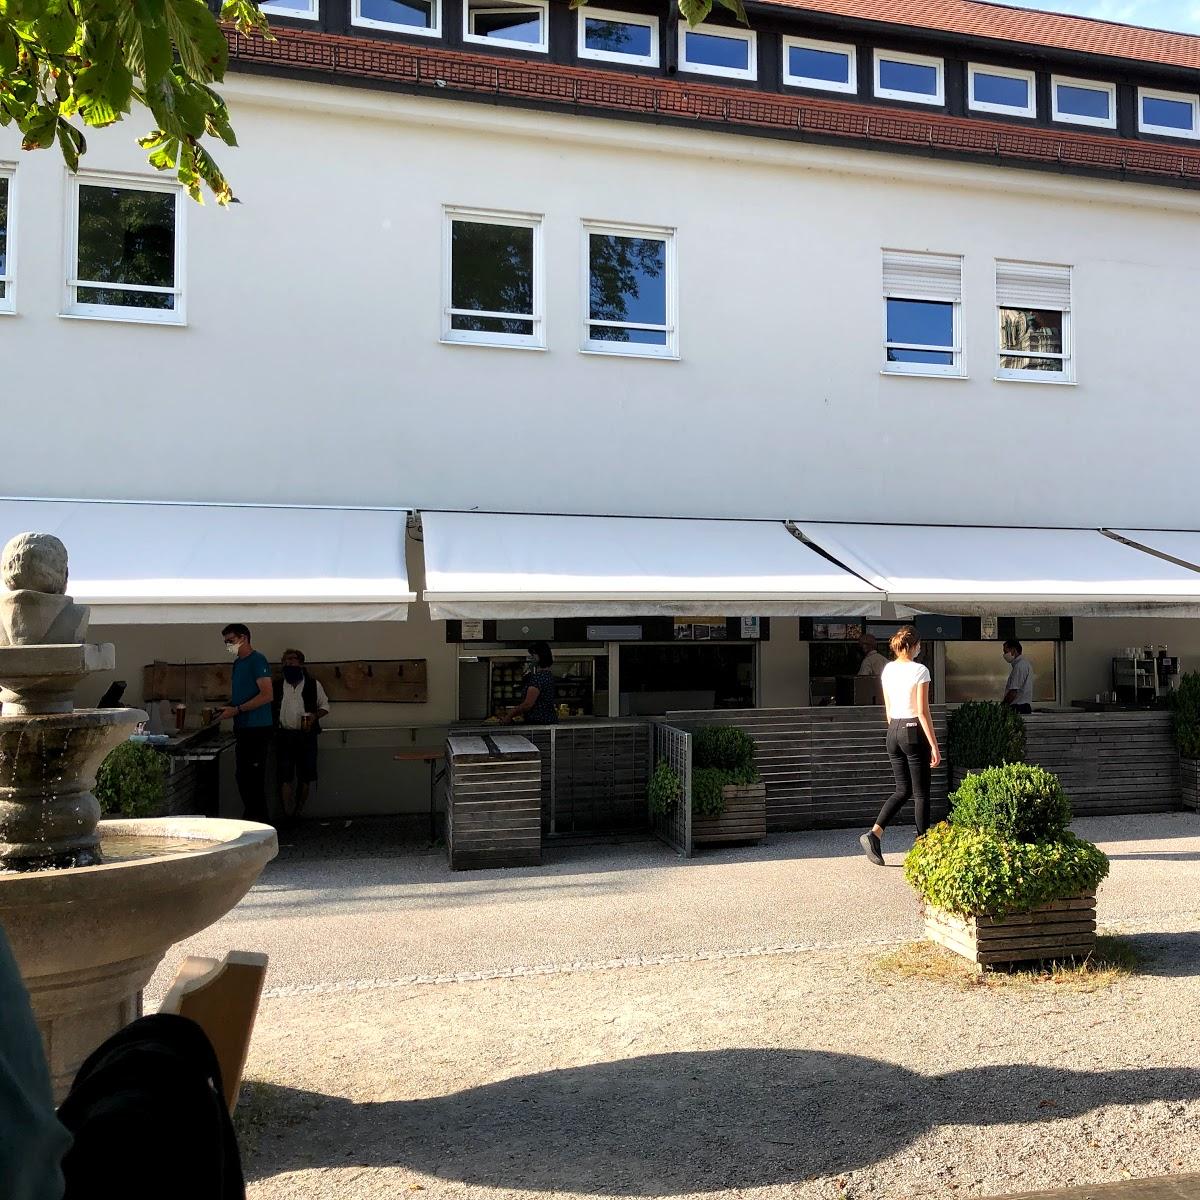 Restaurant "Biergarten Im Klosterhof" in Fürstenfeldbruck